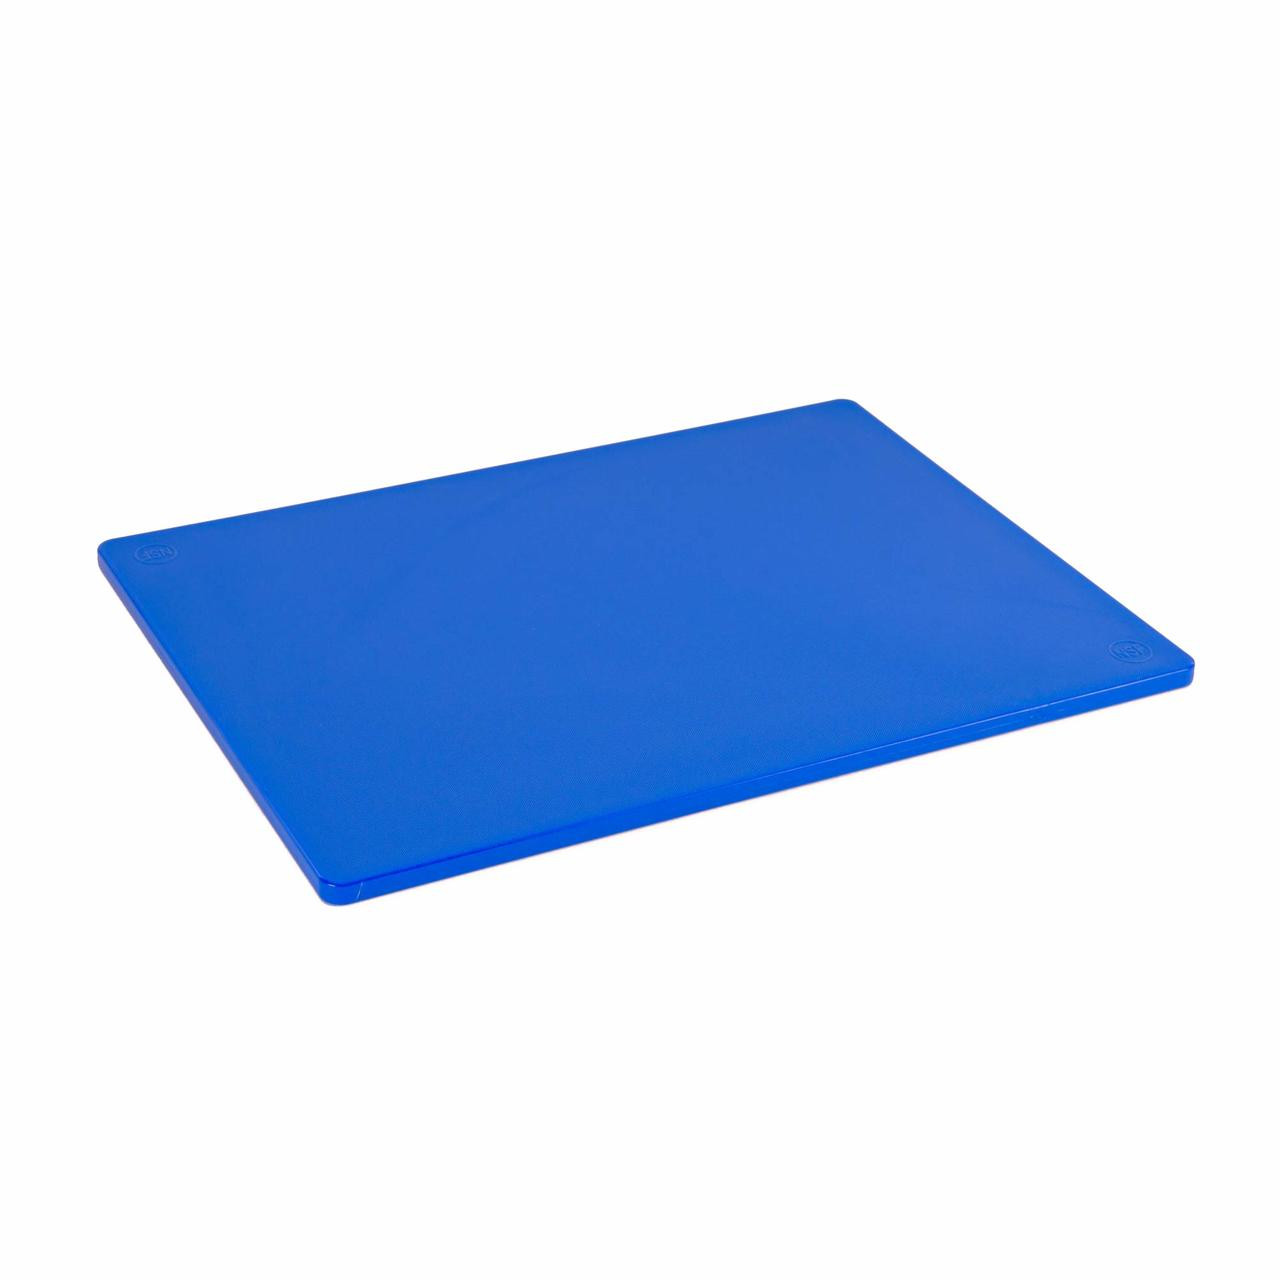 15 x 20 Economy Blue Poly Cutting Board